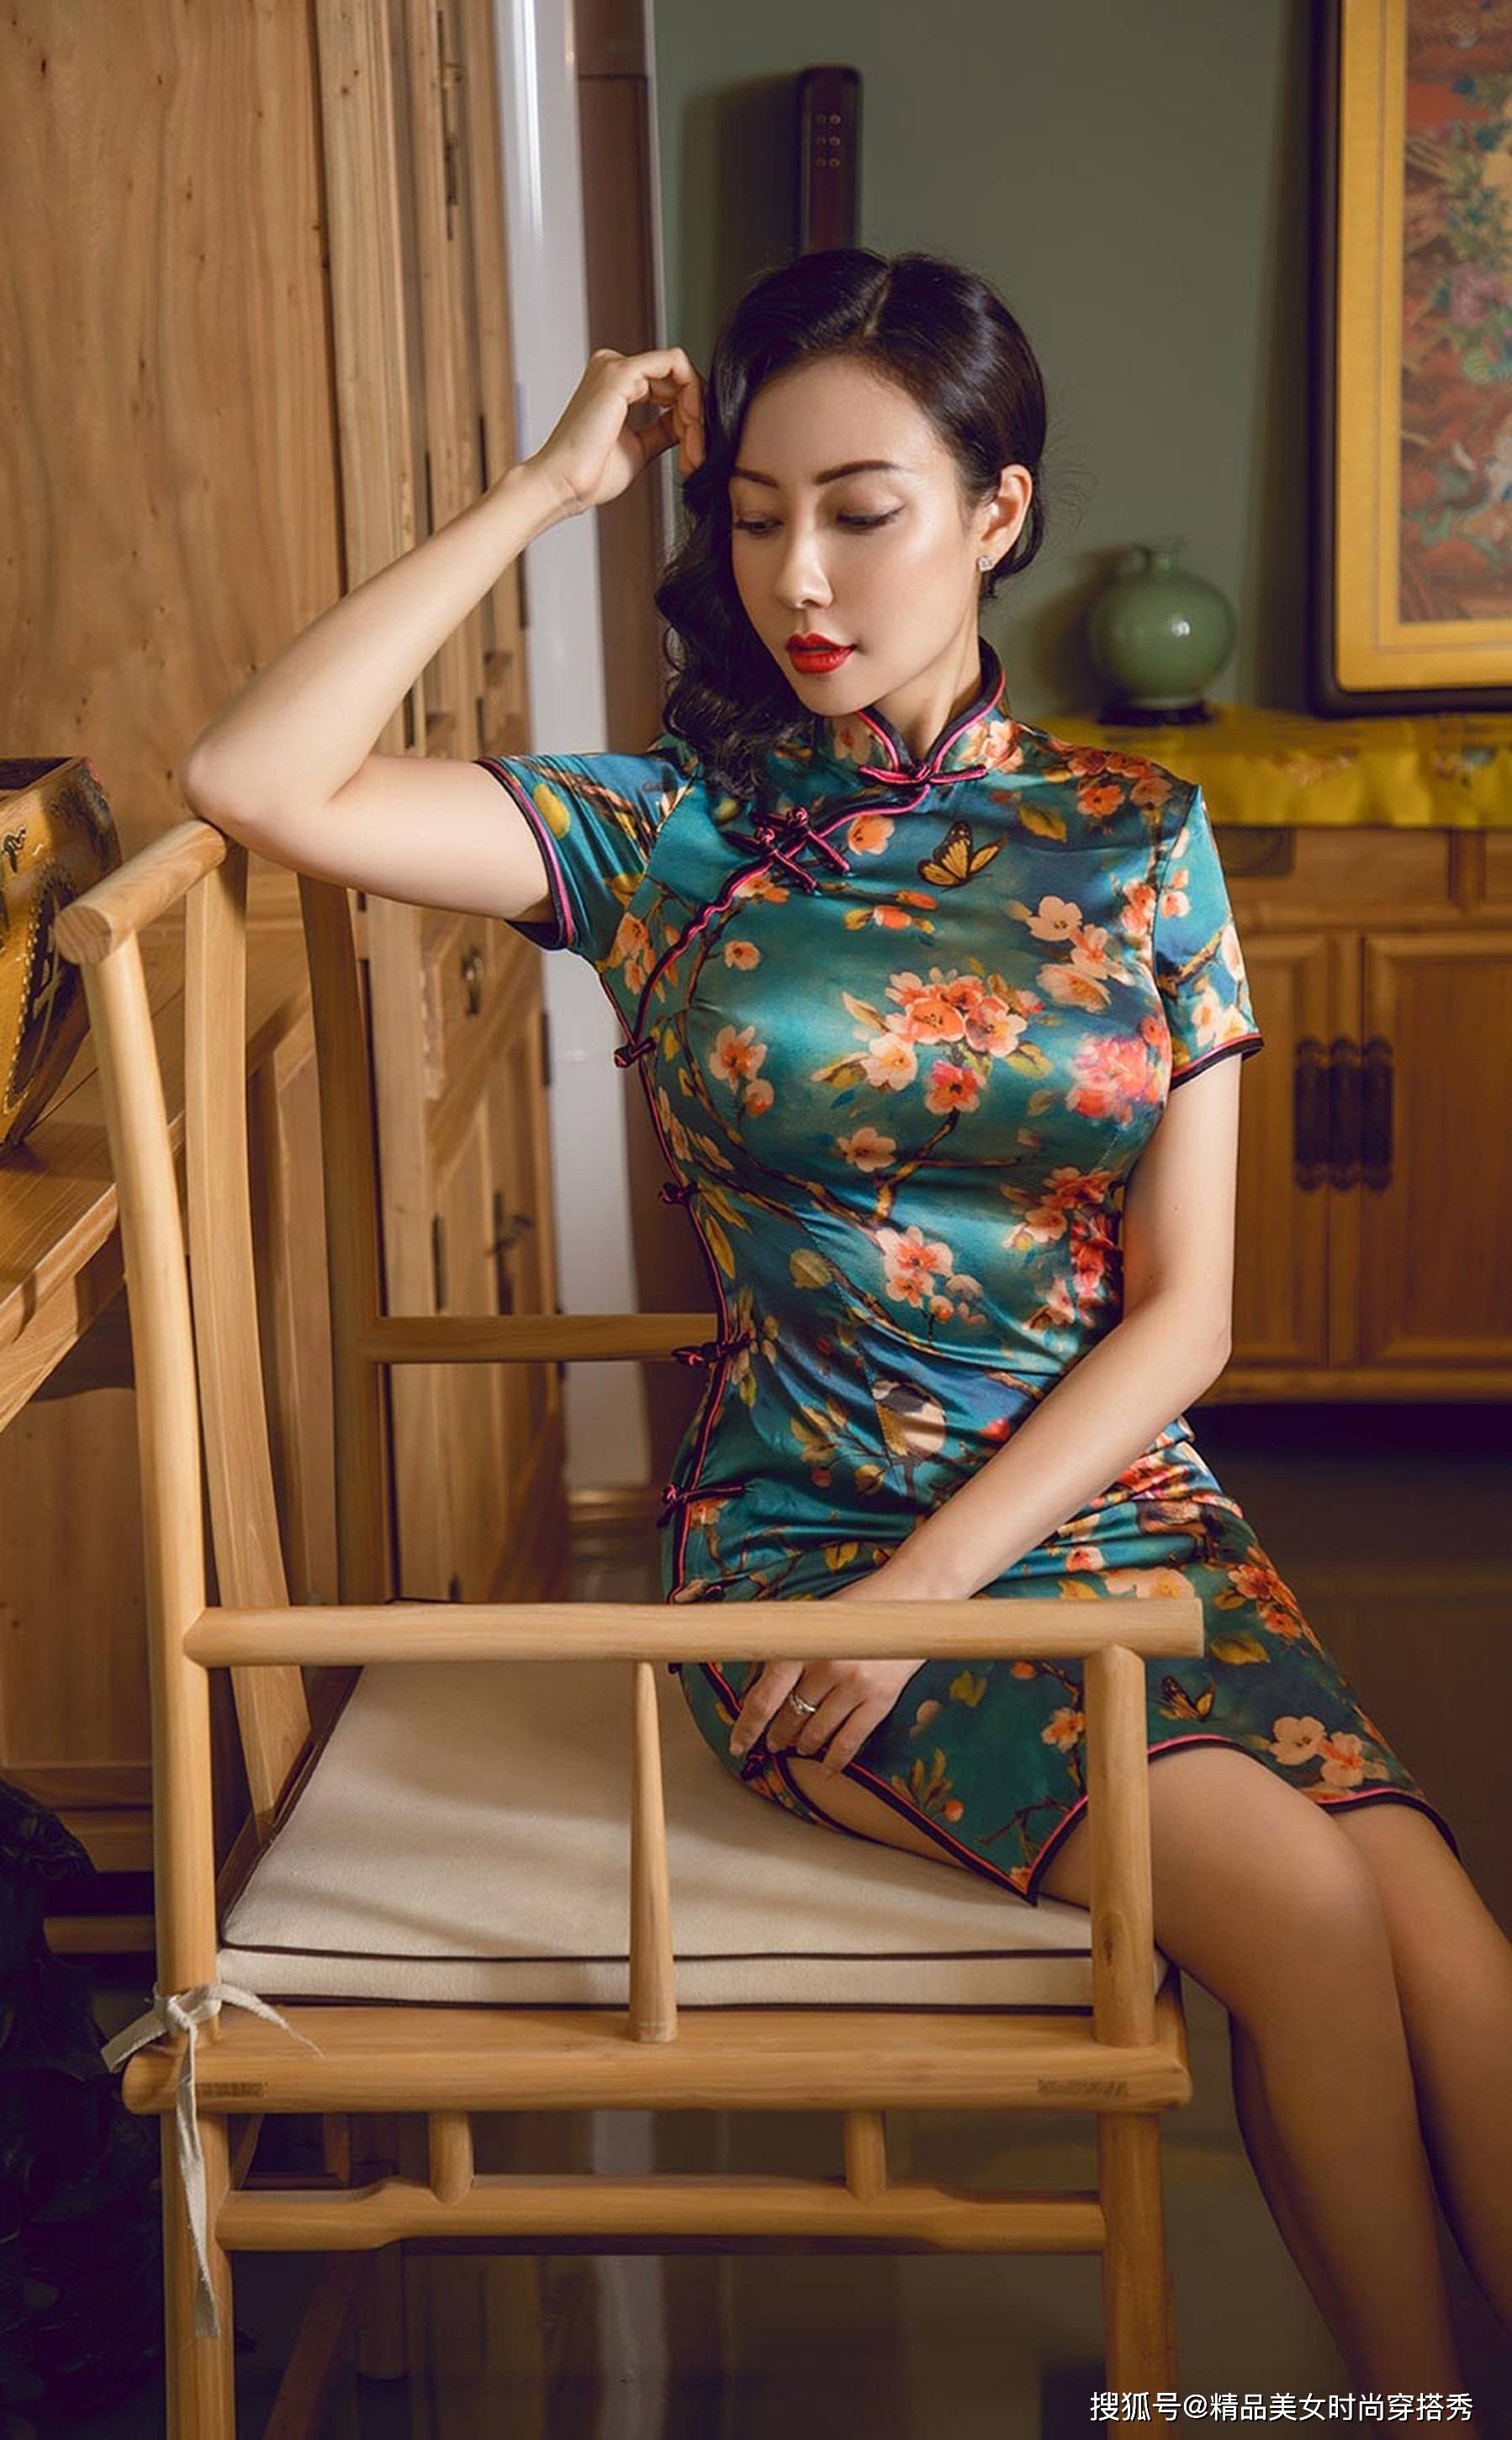 旗袍,这种极具东方韵味的服饰,一直以来都是华夏民族传统文化的瑰宝